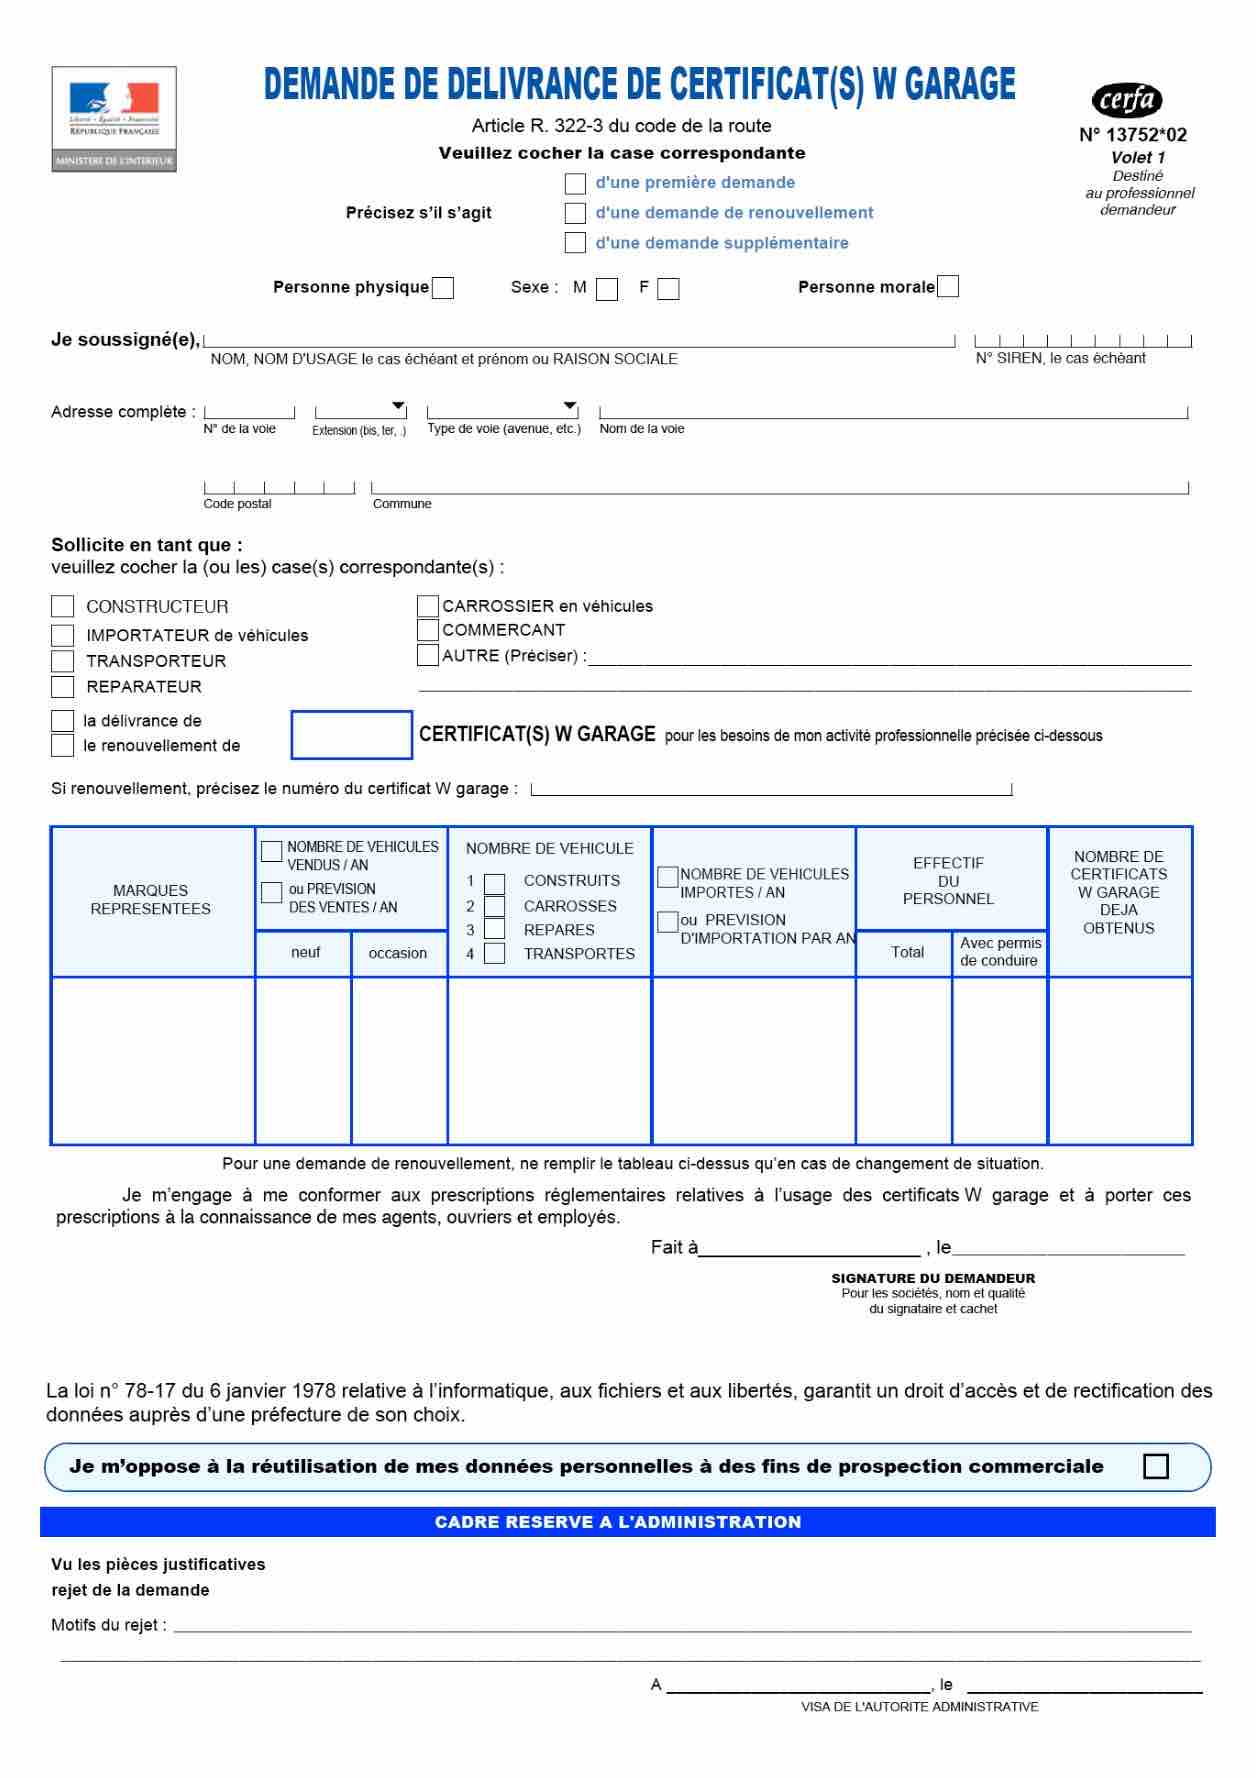 CERFA 13752*02 : Formulaire de délivrance de certificat(s) w garage